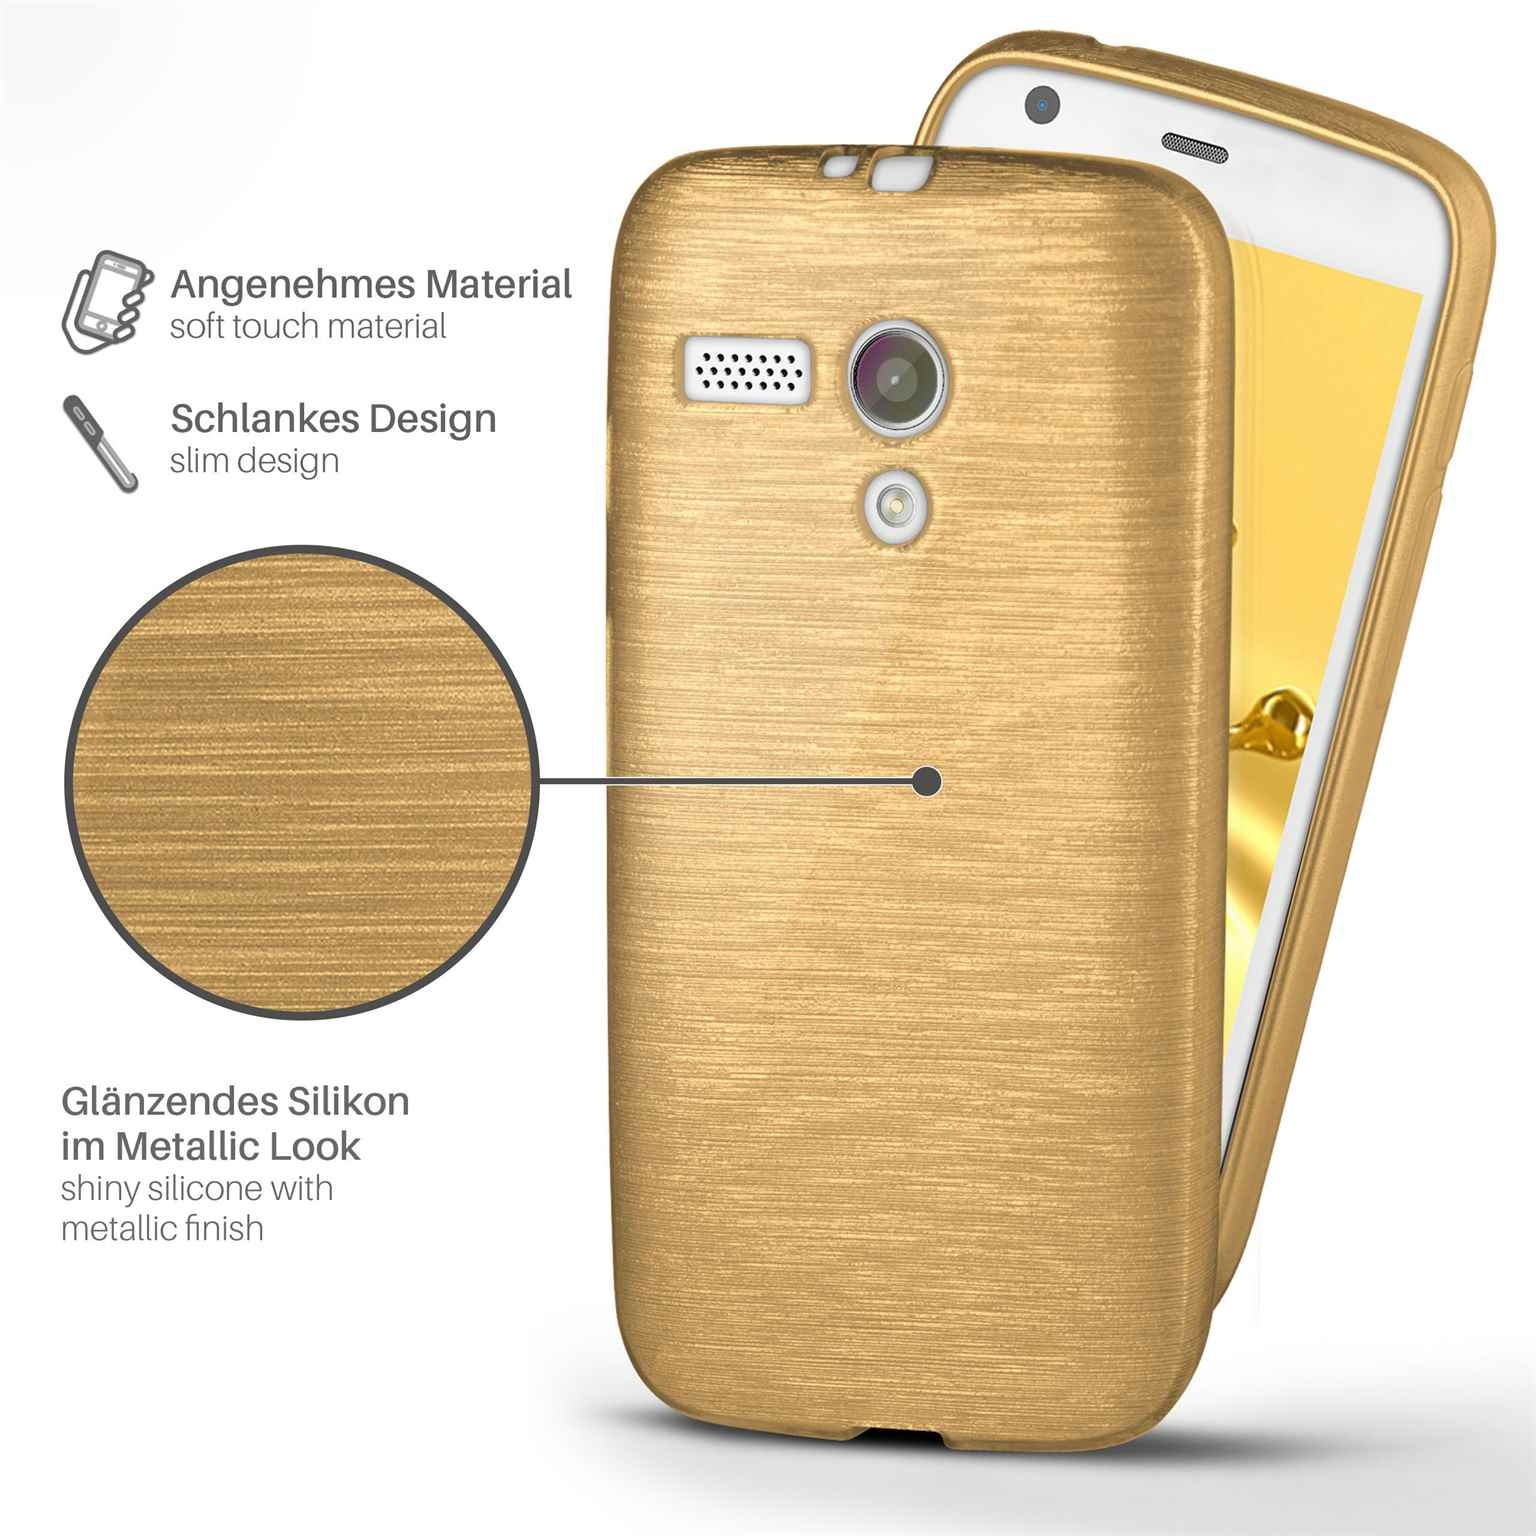 MOEX Backcover, Case, G, Brushed Moto Ivory-Gold Motorola,